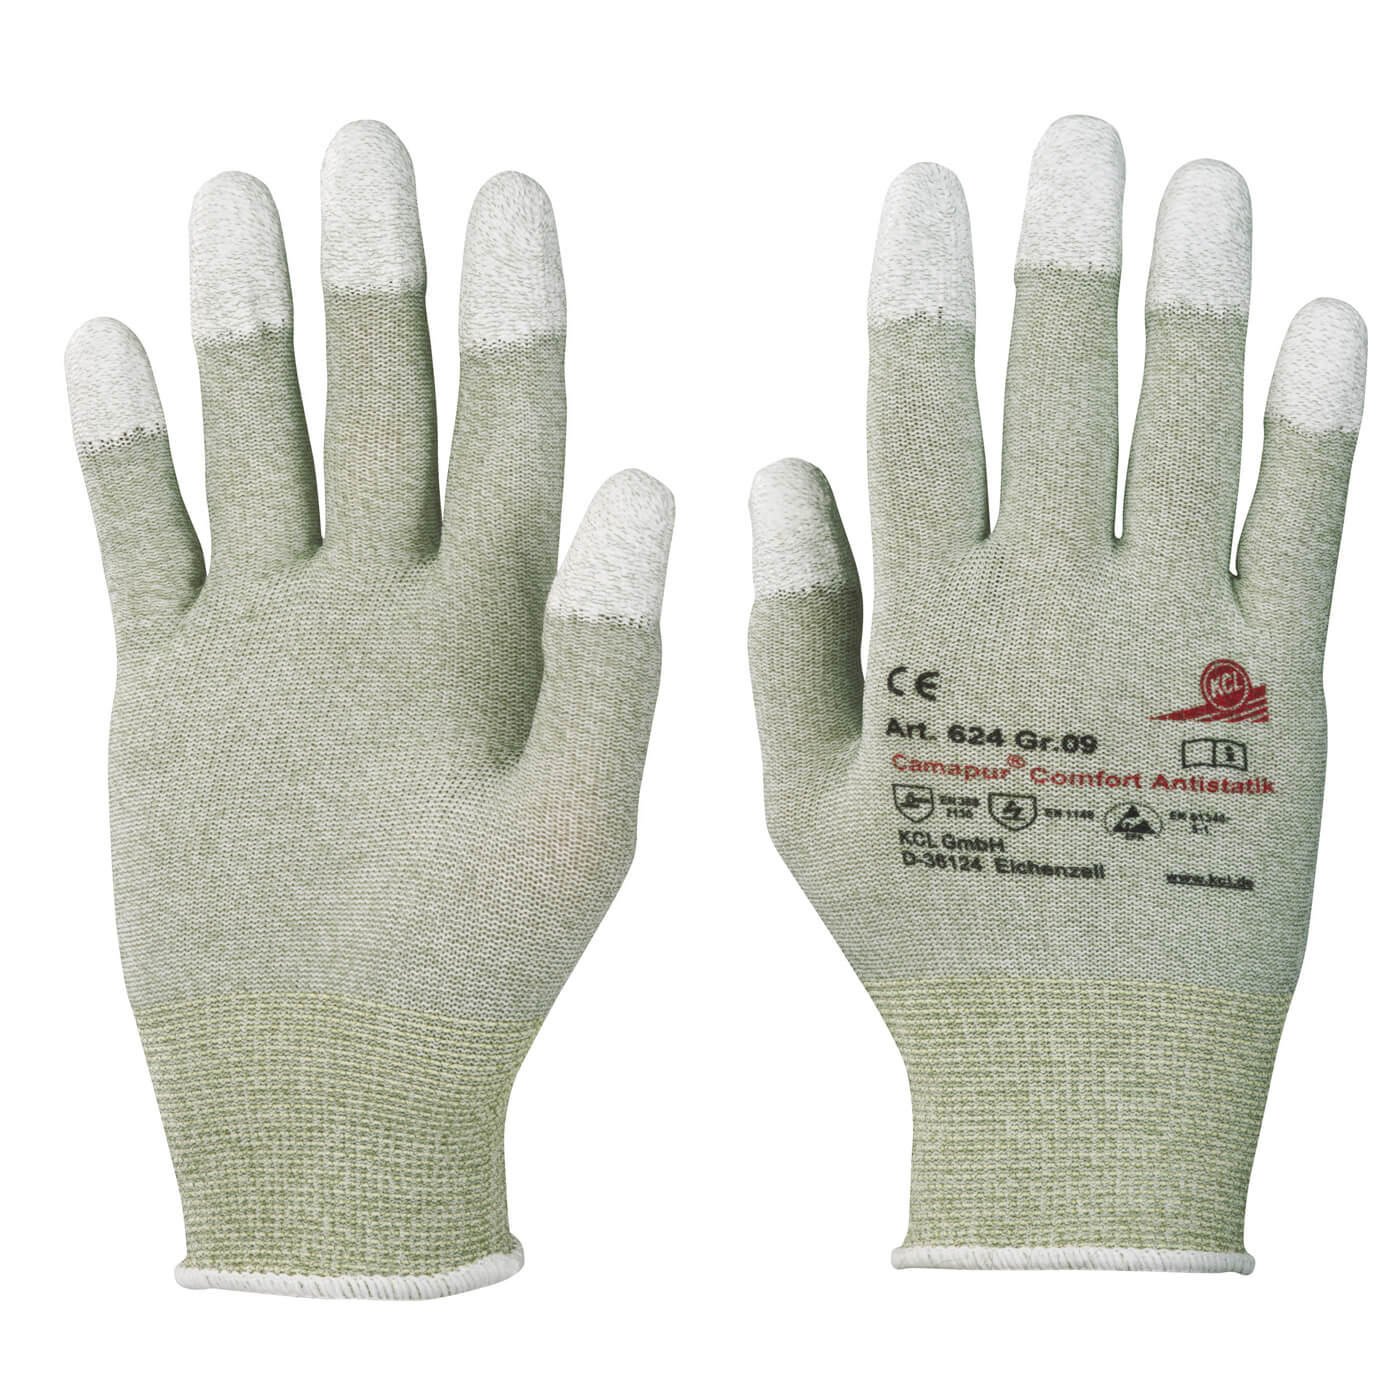 Rękawice antystatyczne Kcl 624 Camapur Comfort Antistatic